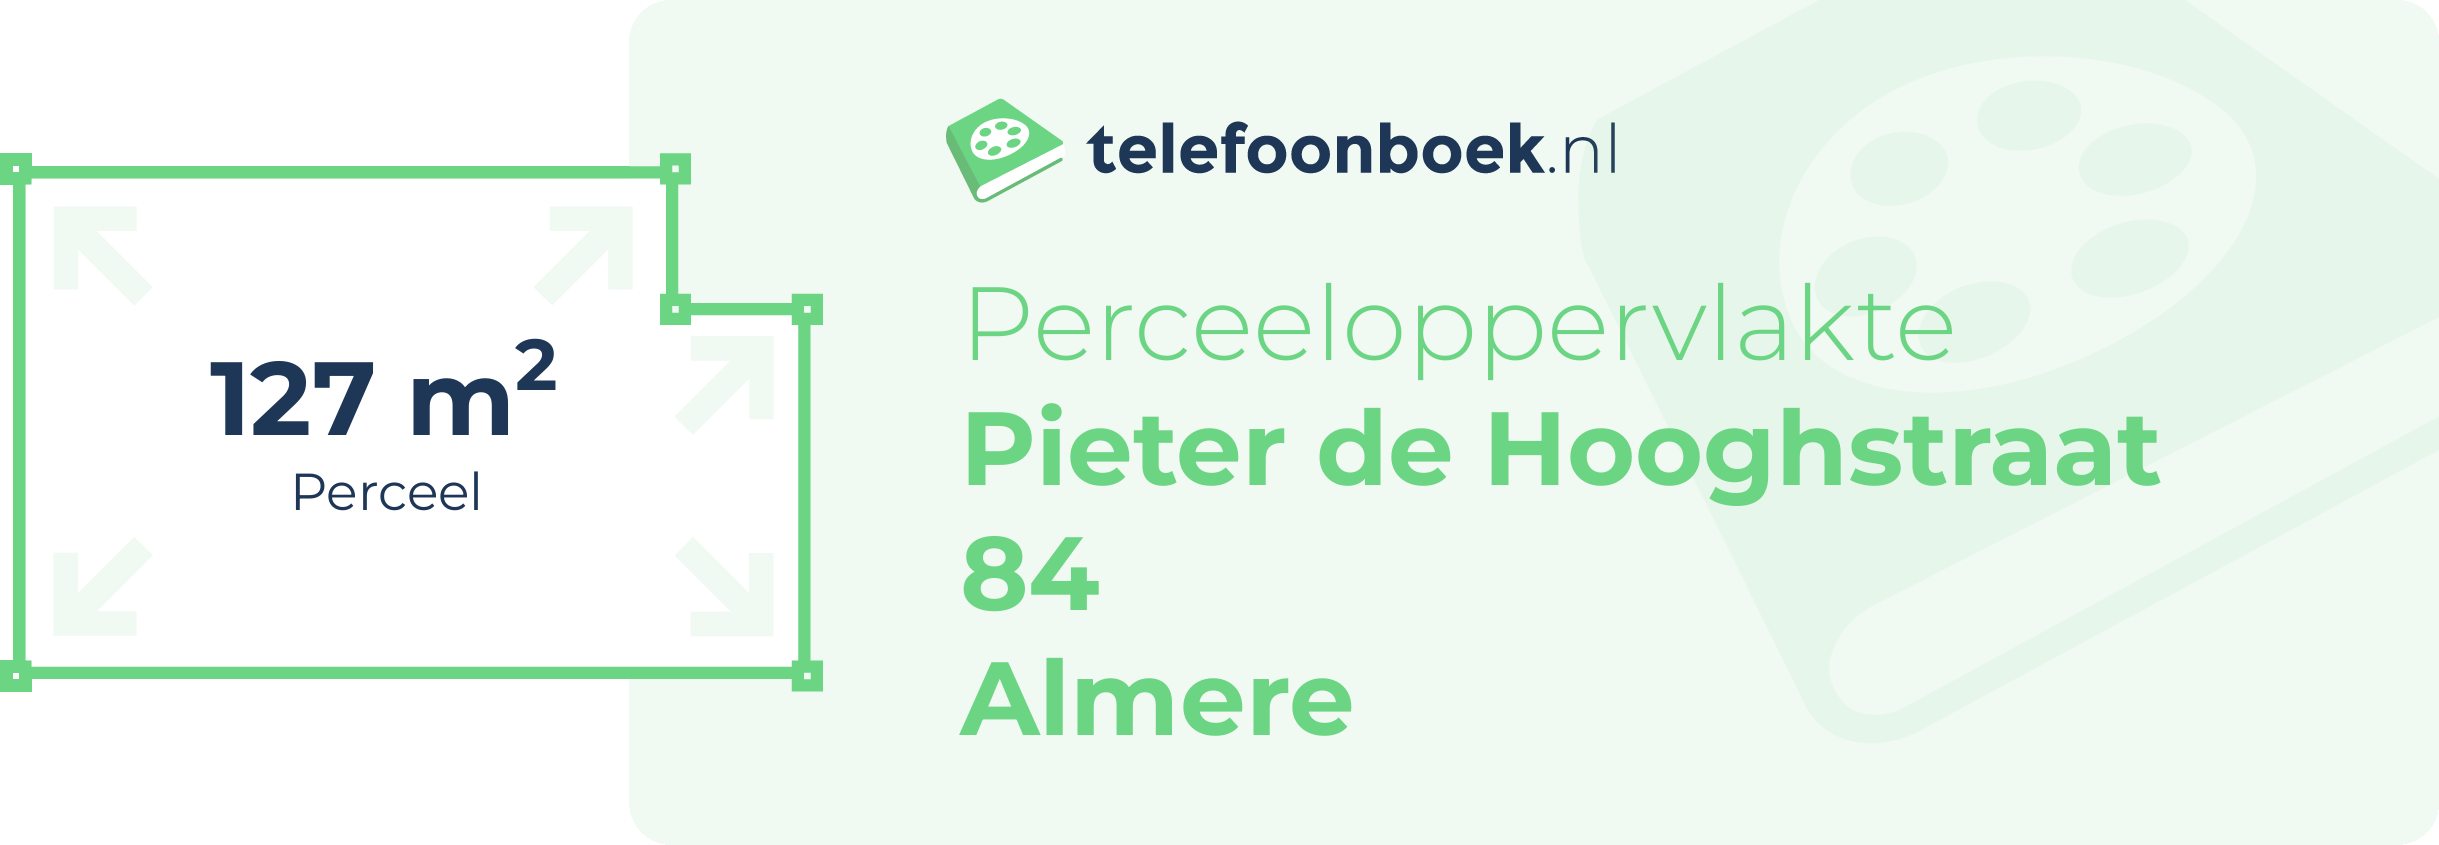 Perceeloppervlakte Pieter De Hooghstraat 84 Almere